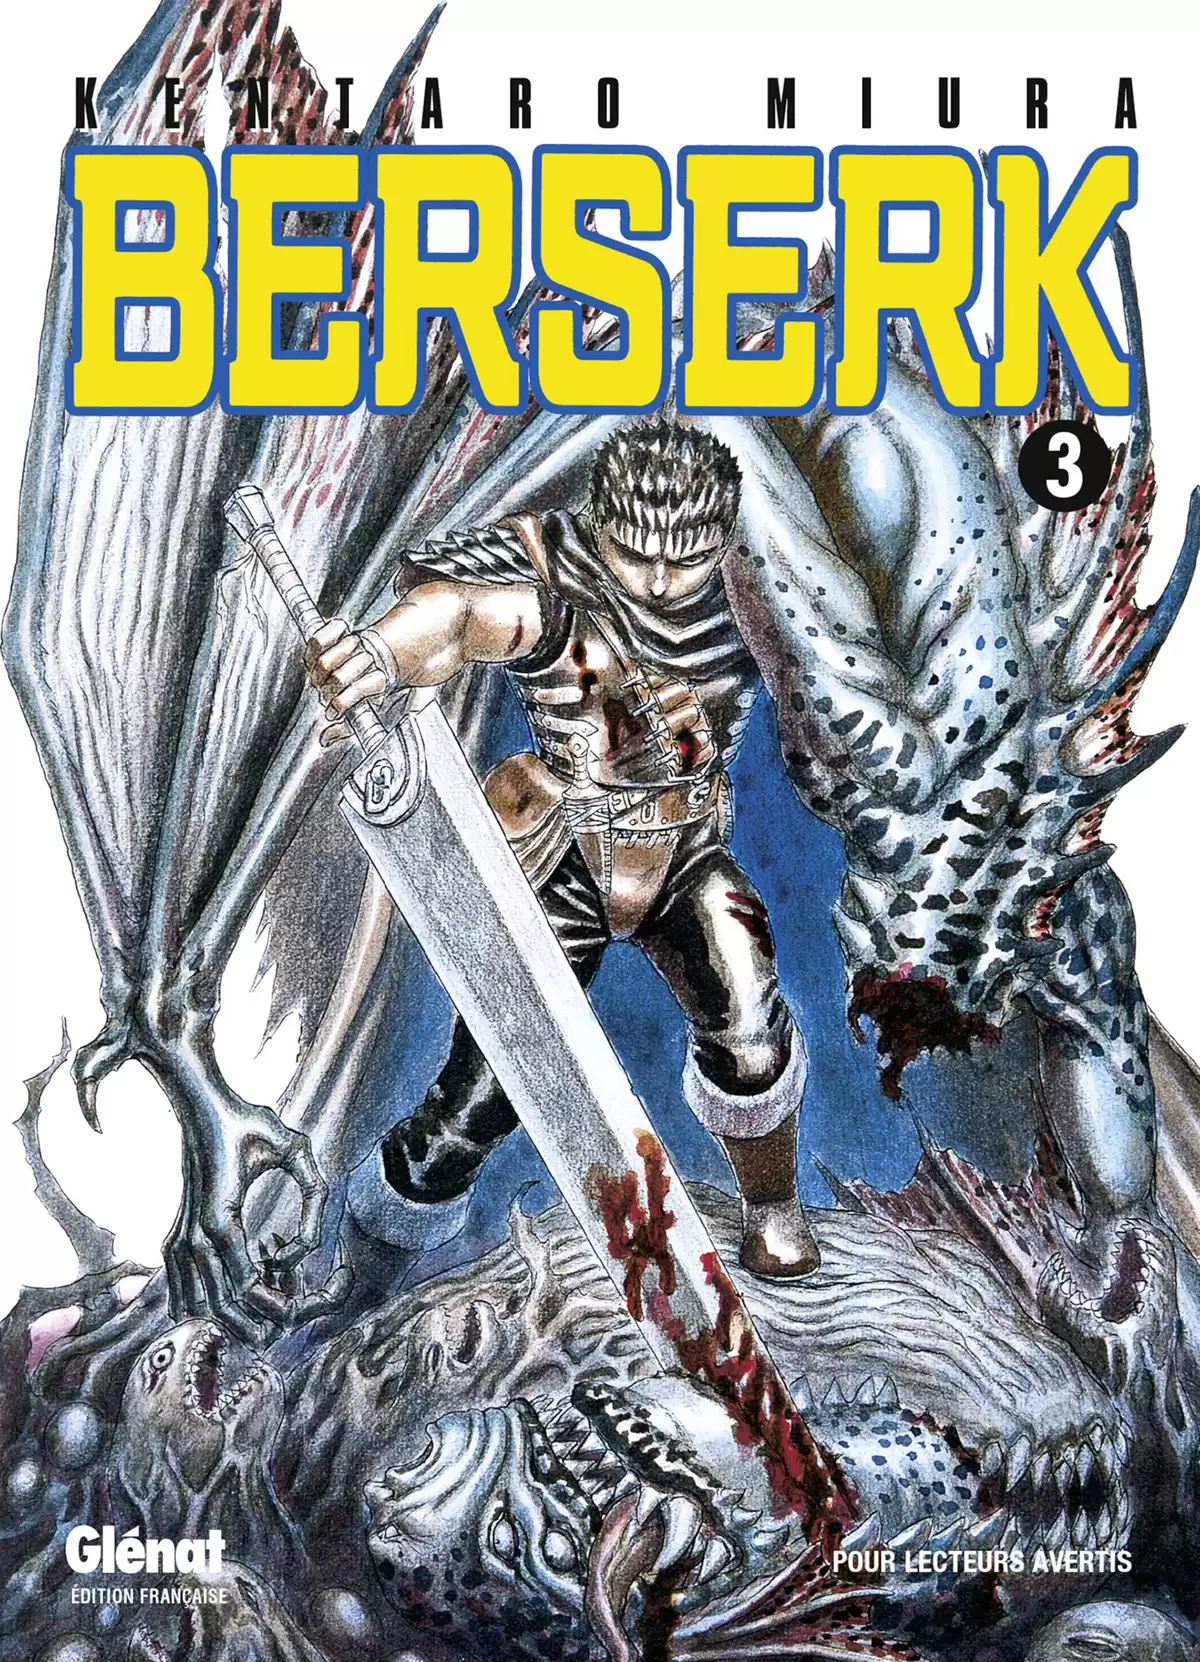 Berserk Volume 3 page 1